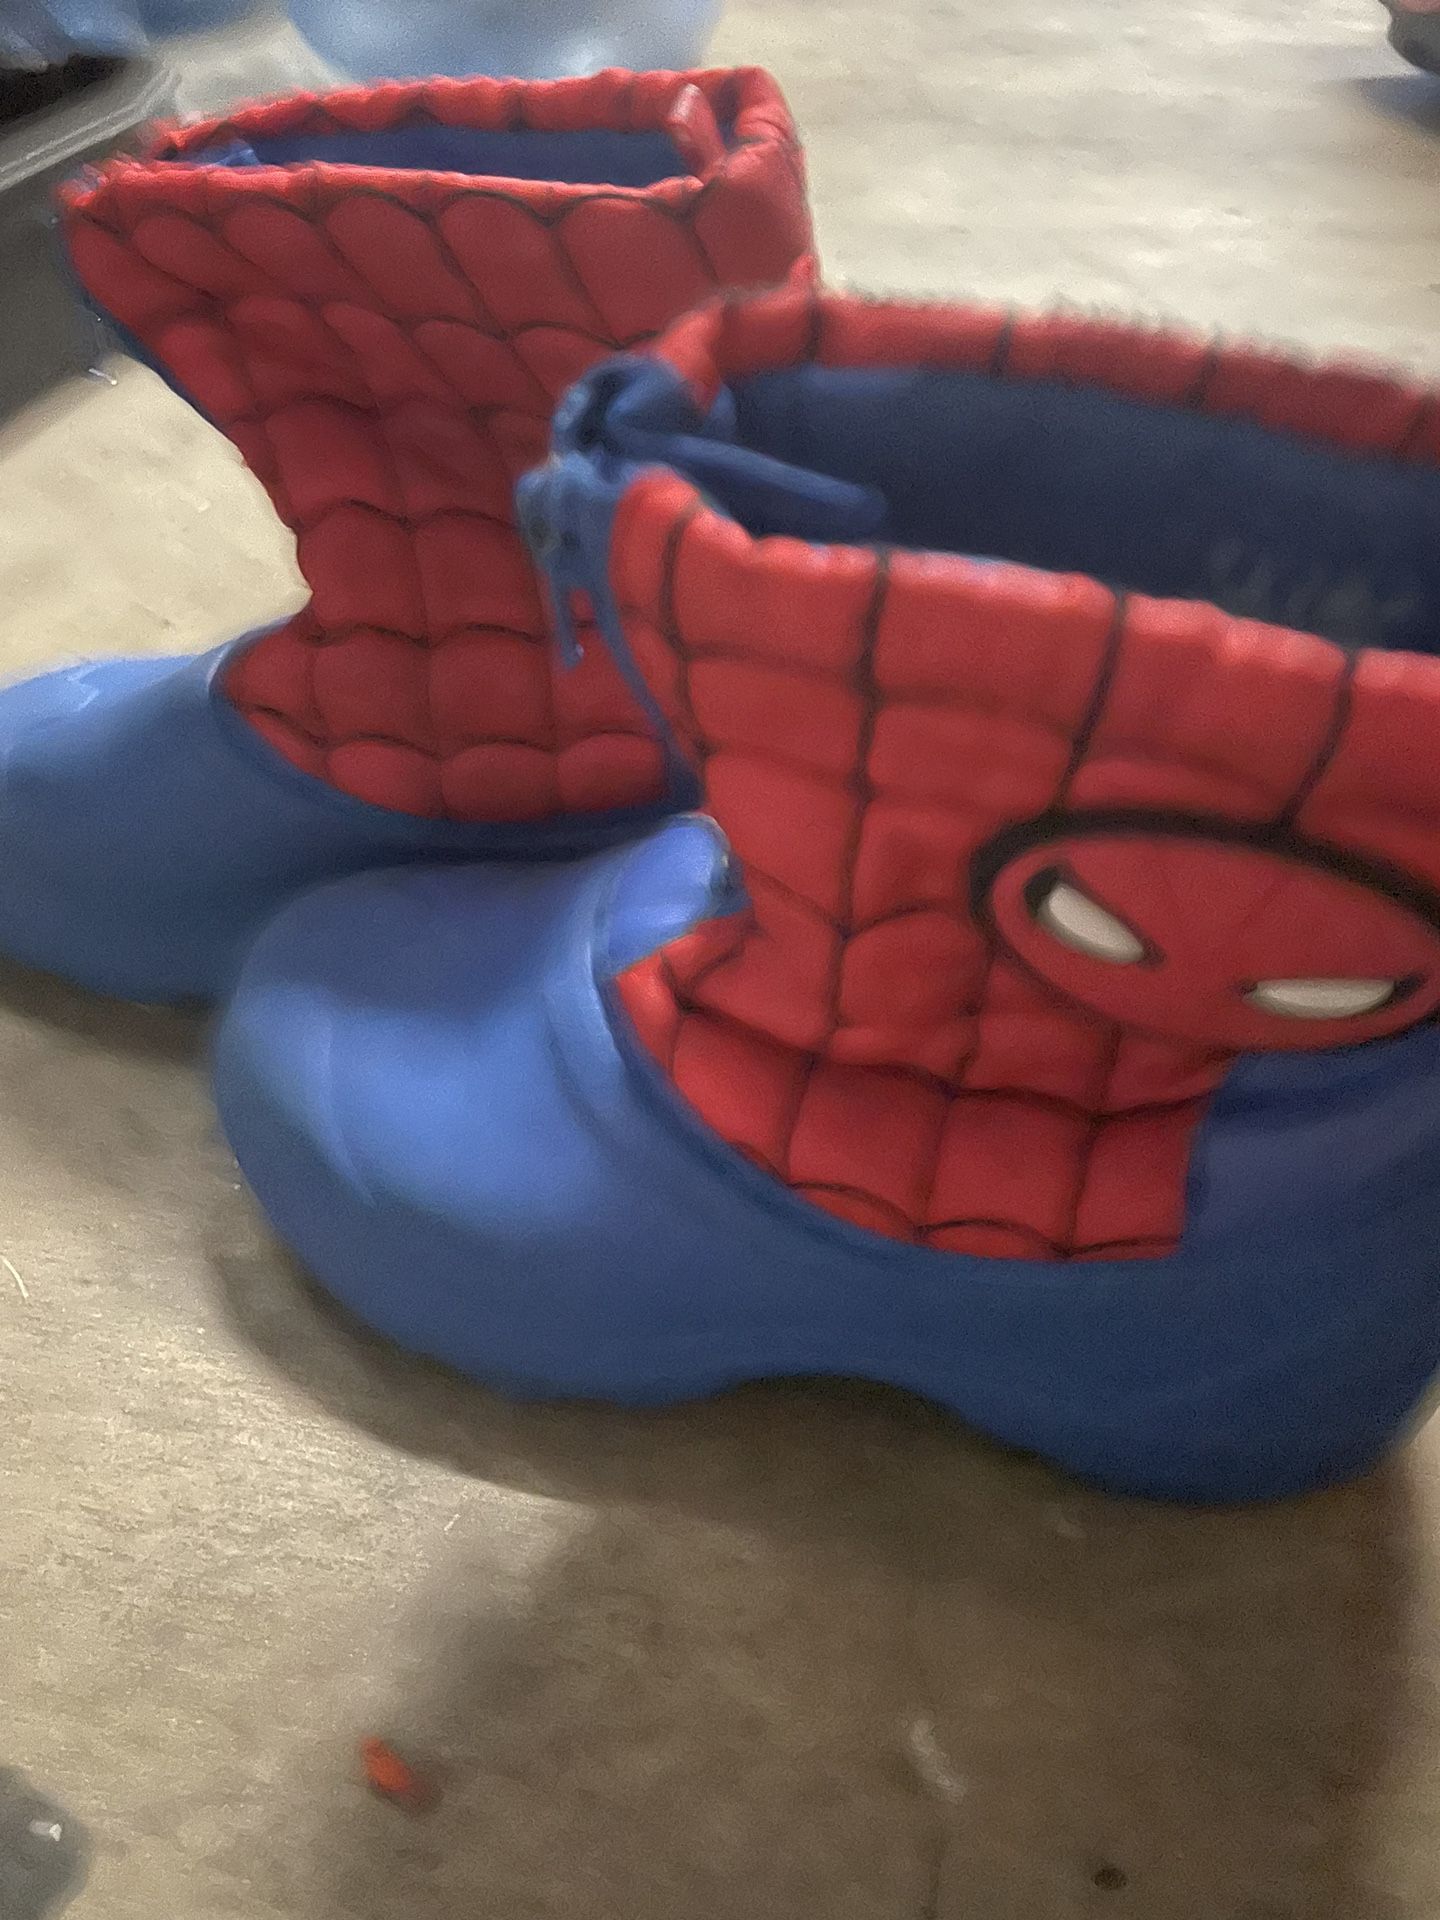 Spider-Man Rain Boots